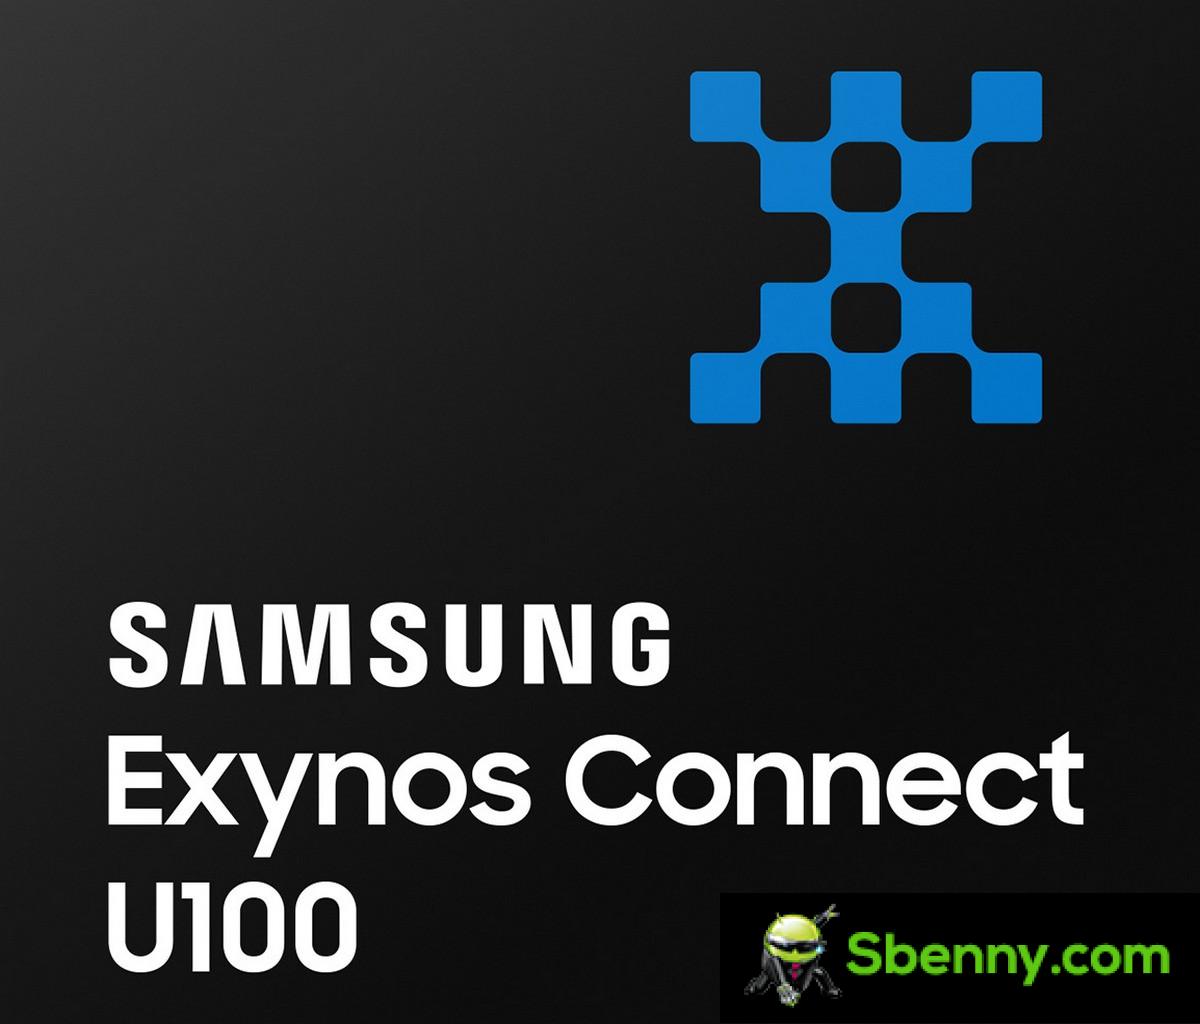 كشفت شركة Samsung النقاب عن مجموعة شرائح النطاق العريض للغاية Exynos Connect U100